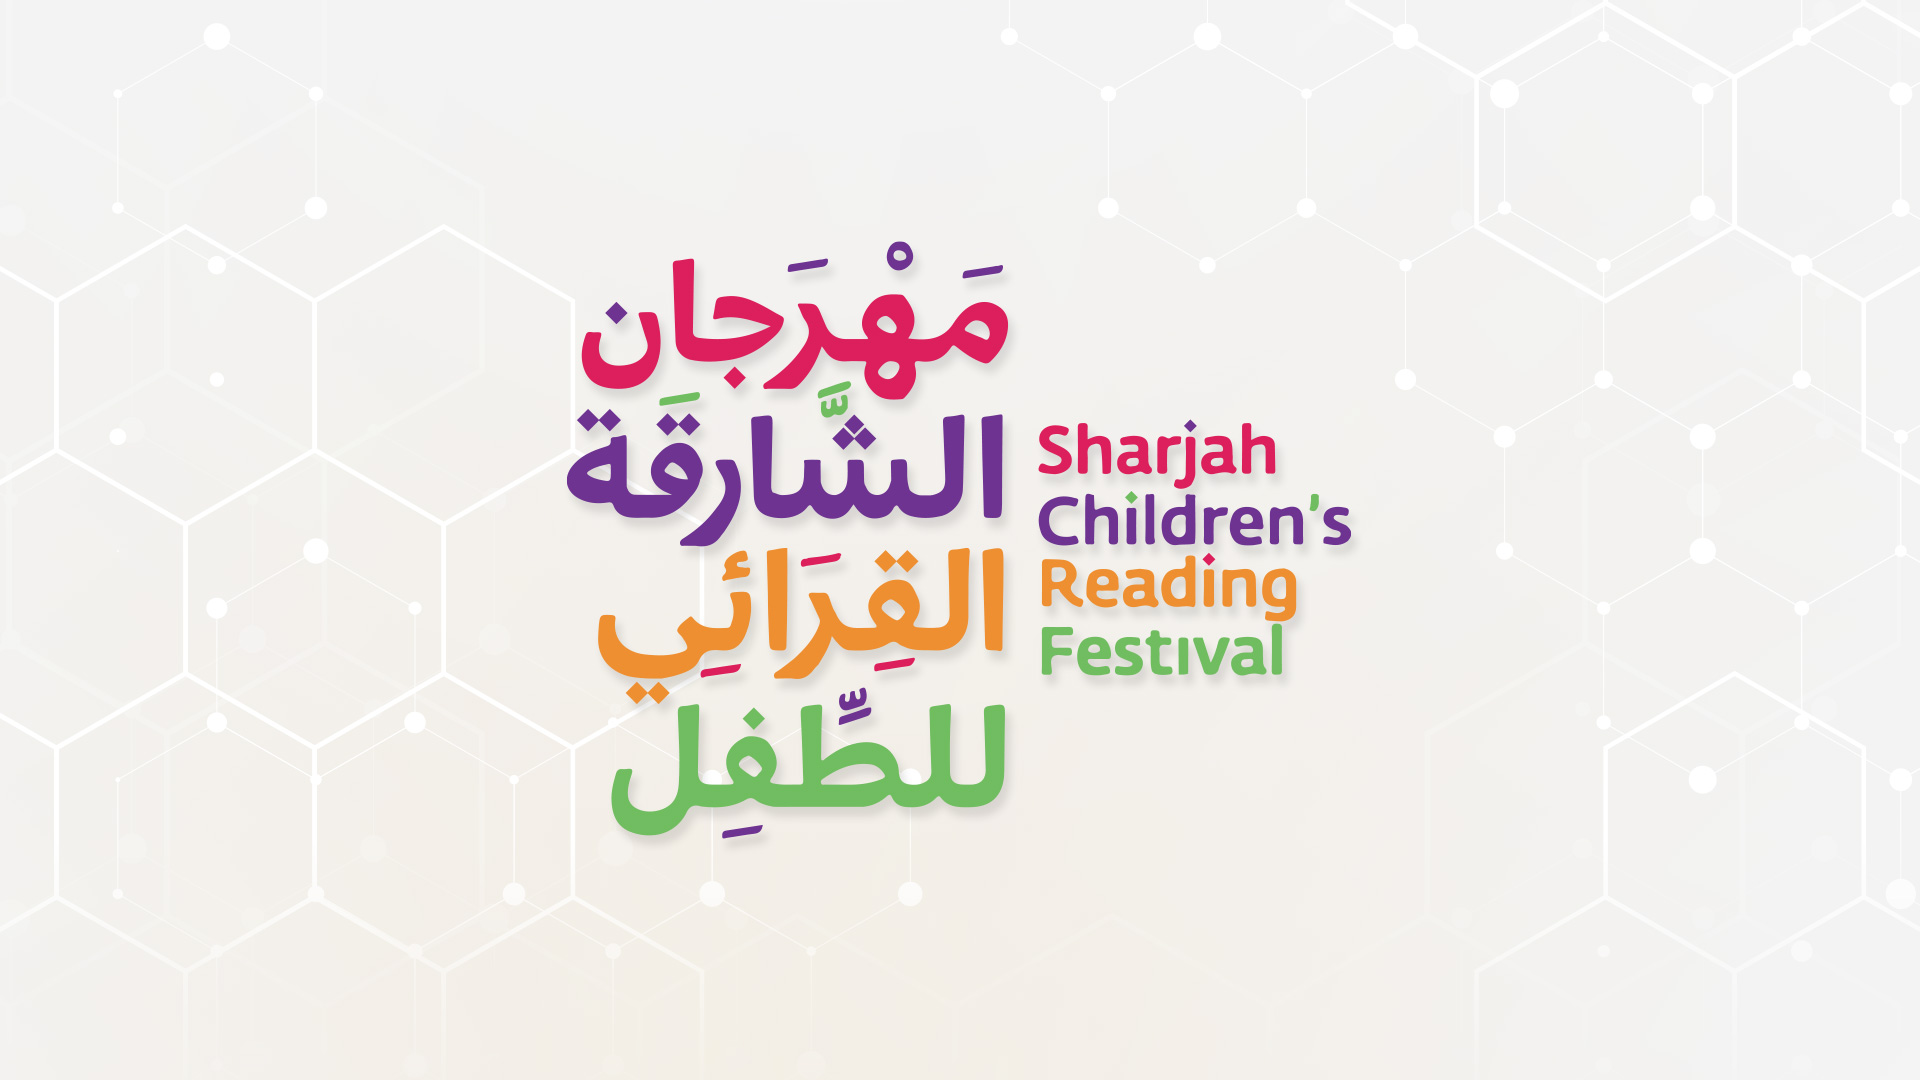 Children's Reading Festival